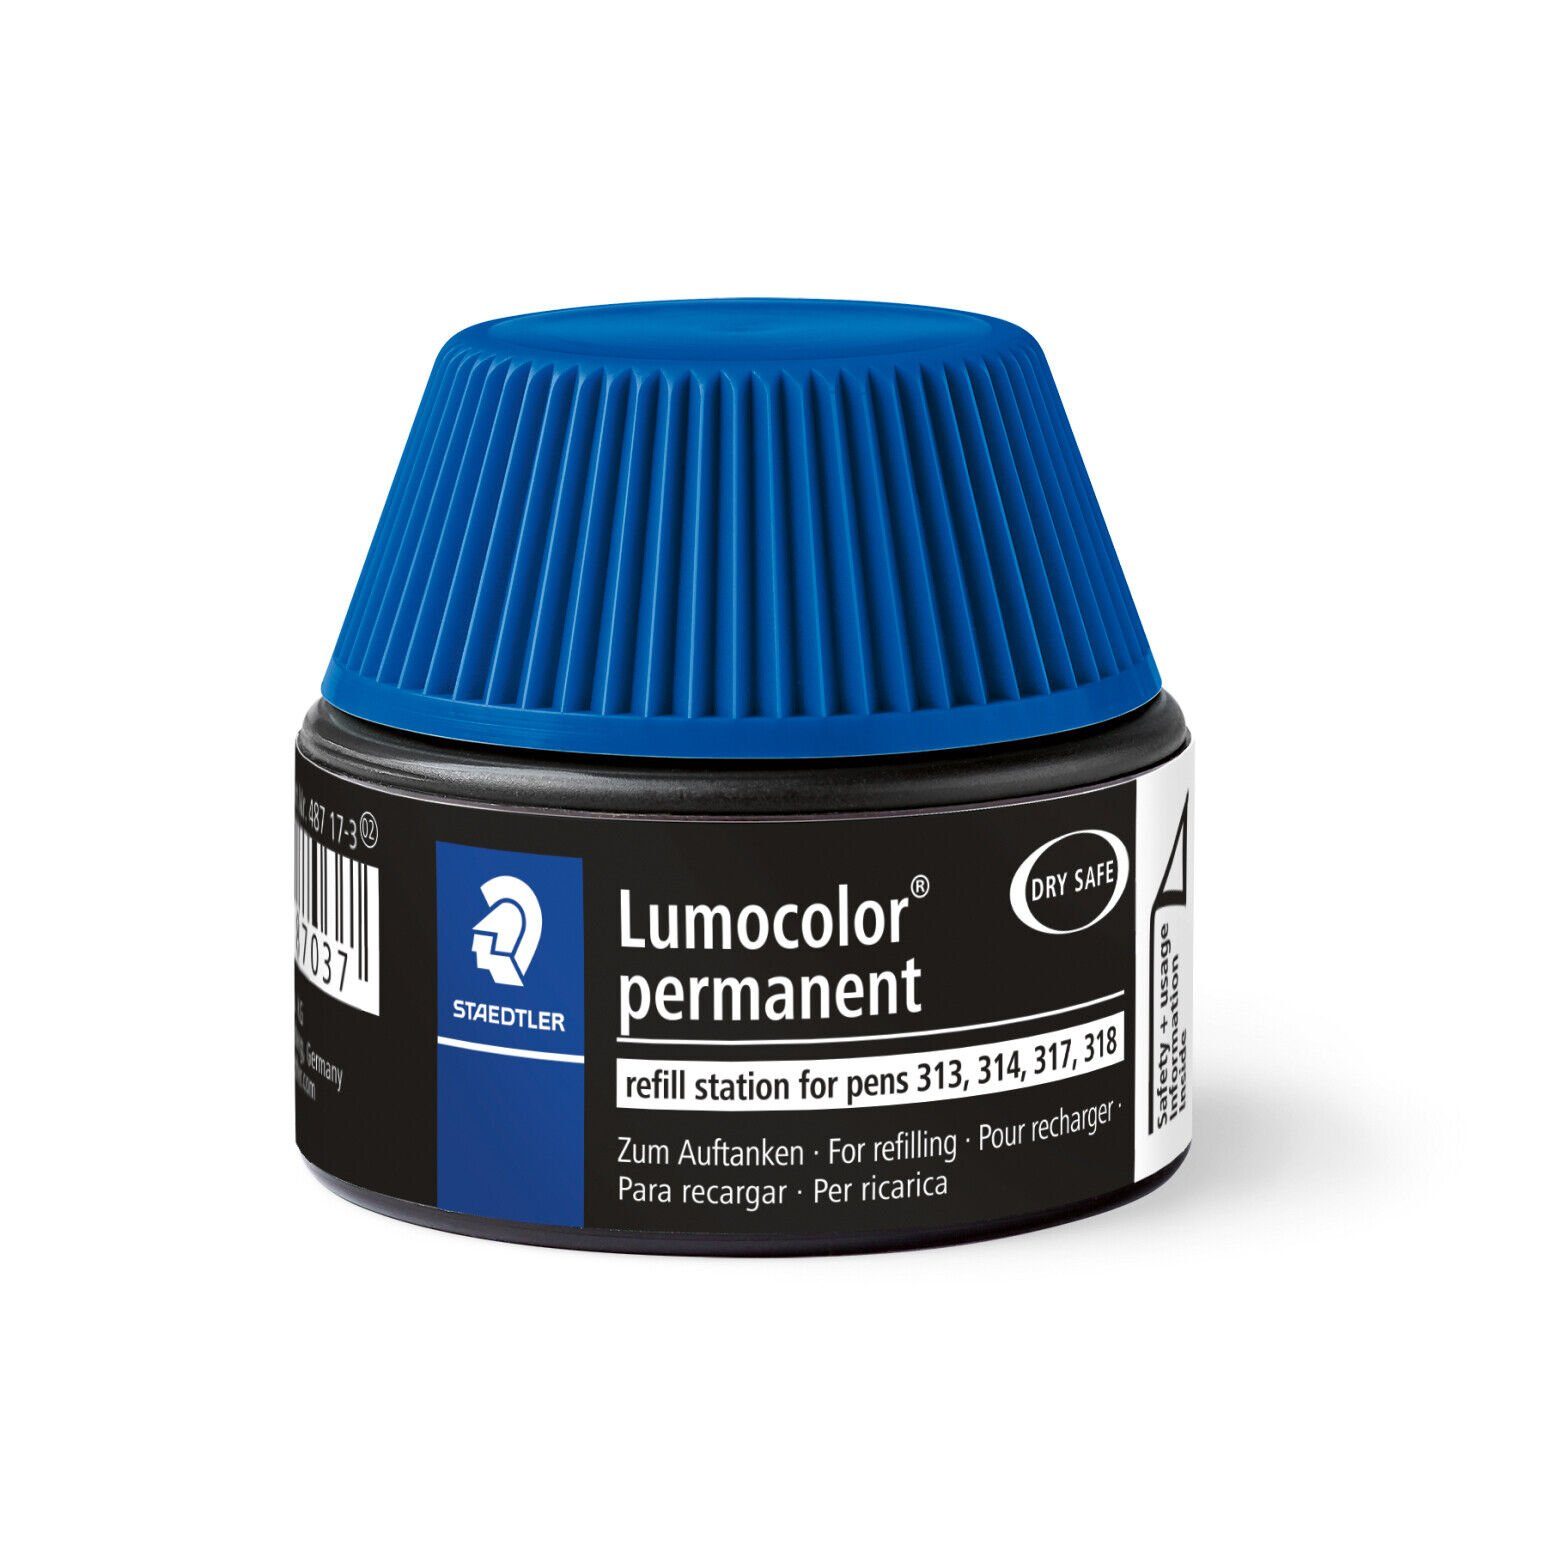 Marker 17-3 Refill Nachfülltinte STAEDTLER wasserfest, permanent Lumocolor® STAEDTLER lichtbeständig 487 blau,